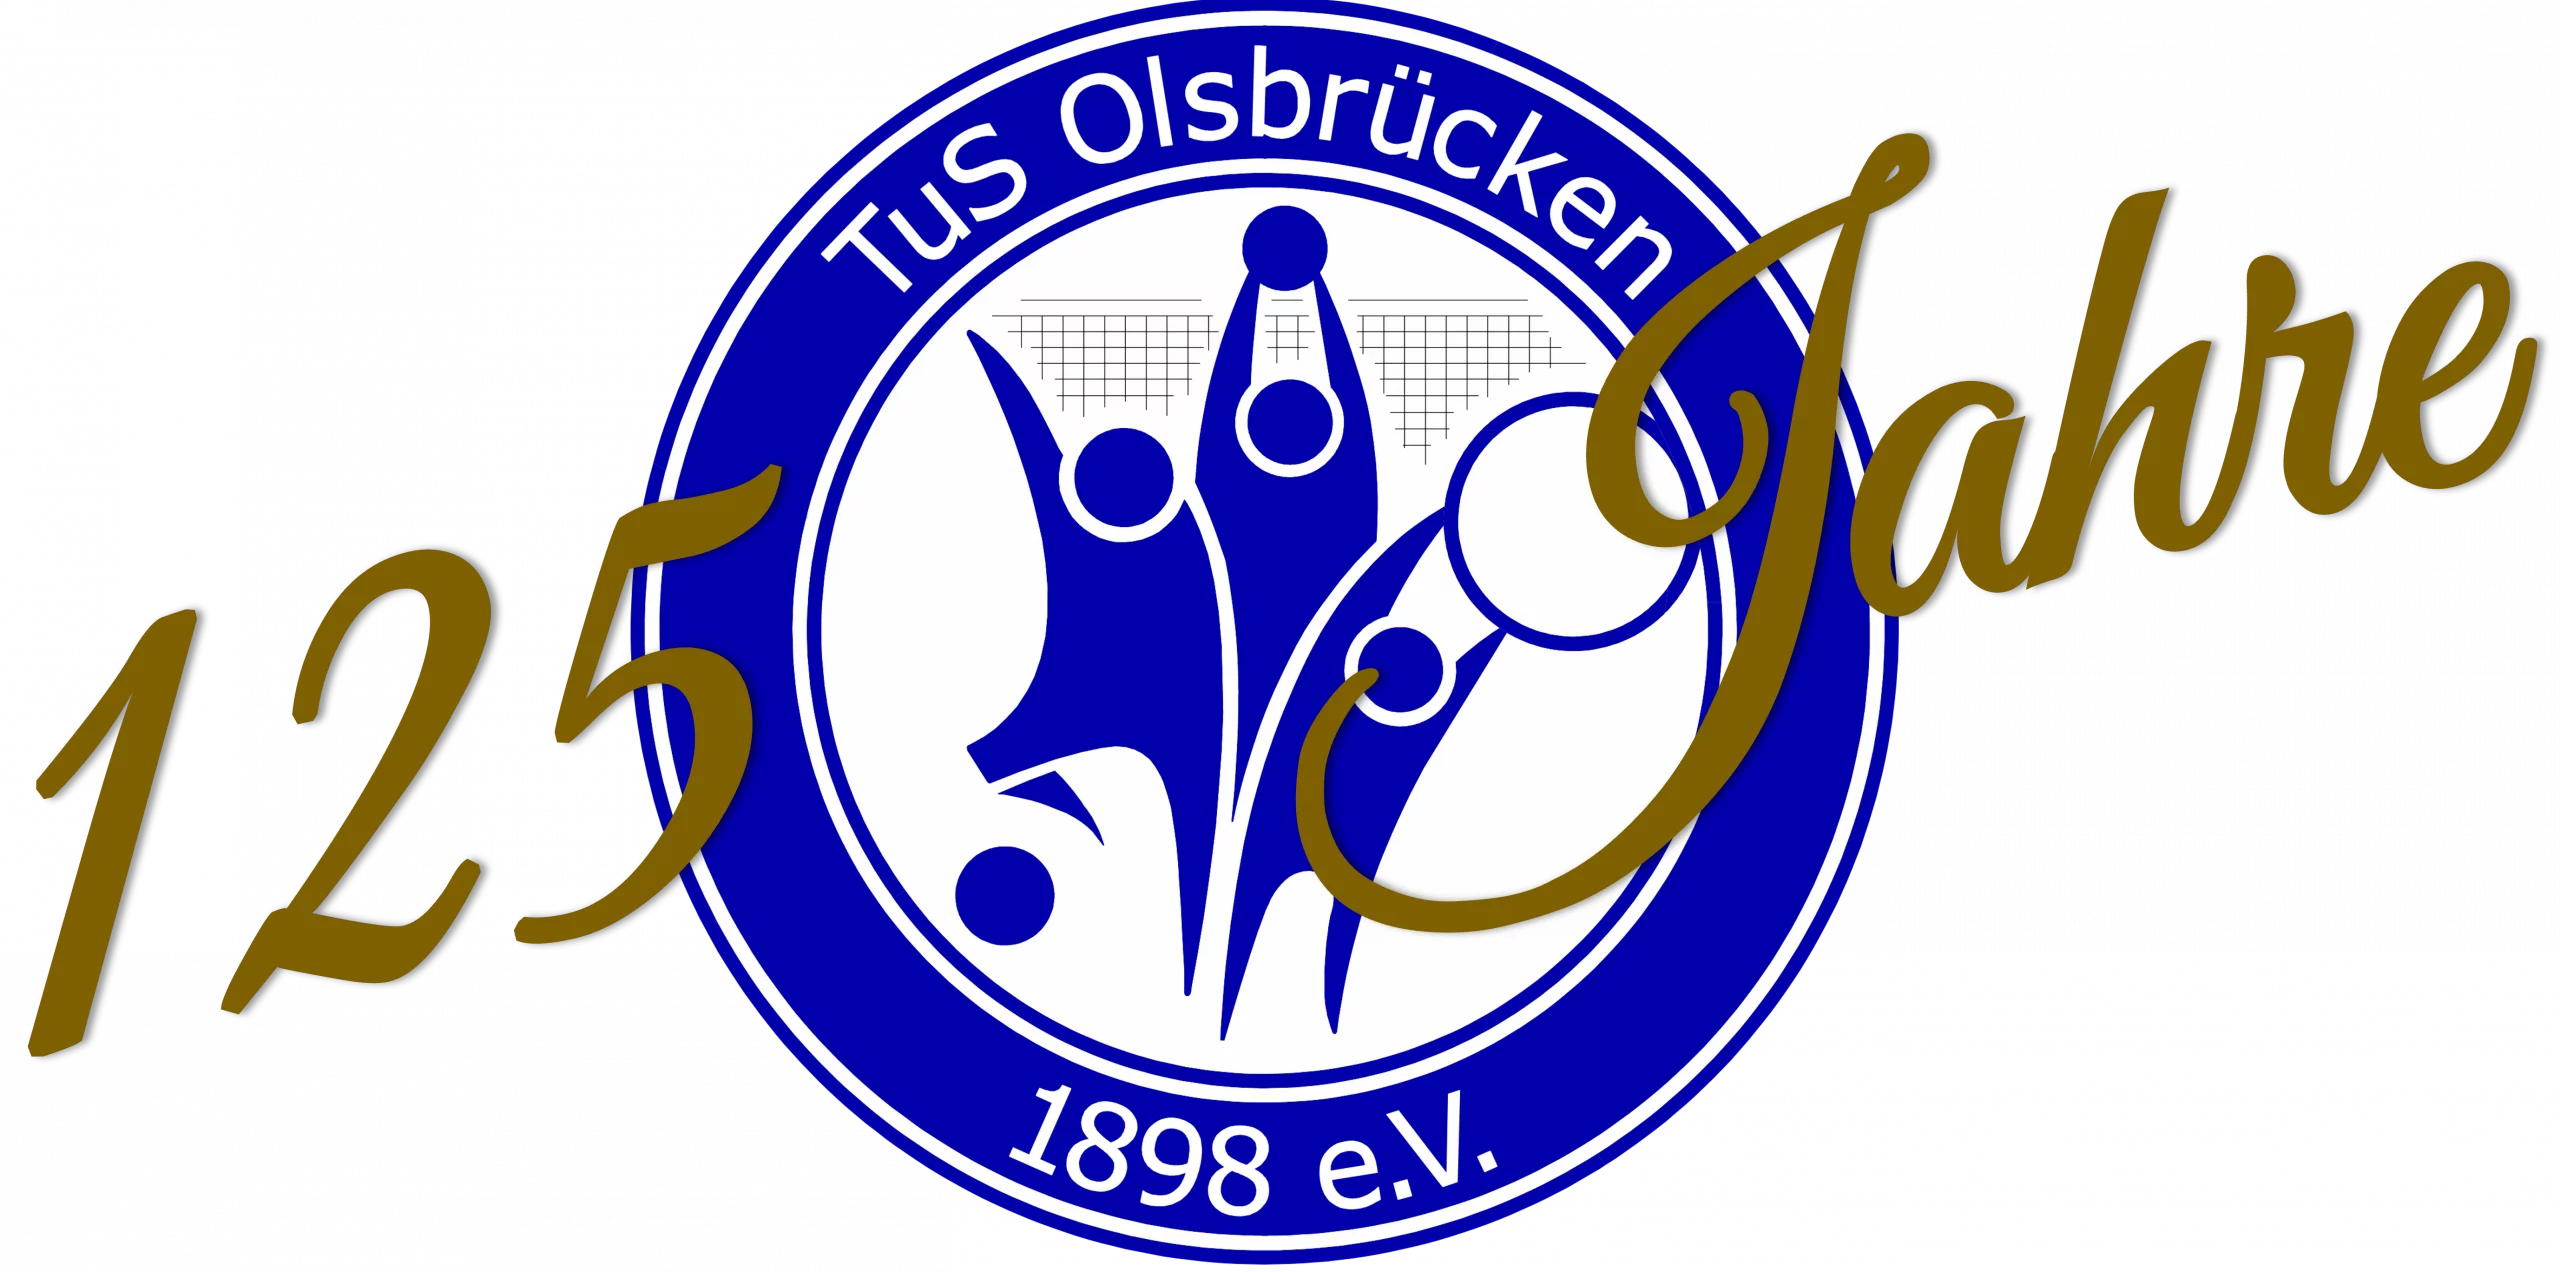 TuS Olsbrücken 1898 e. V.